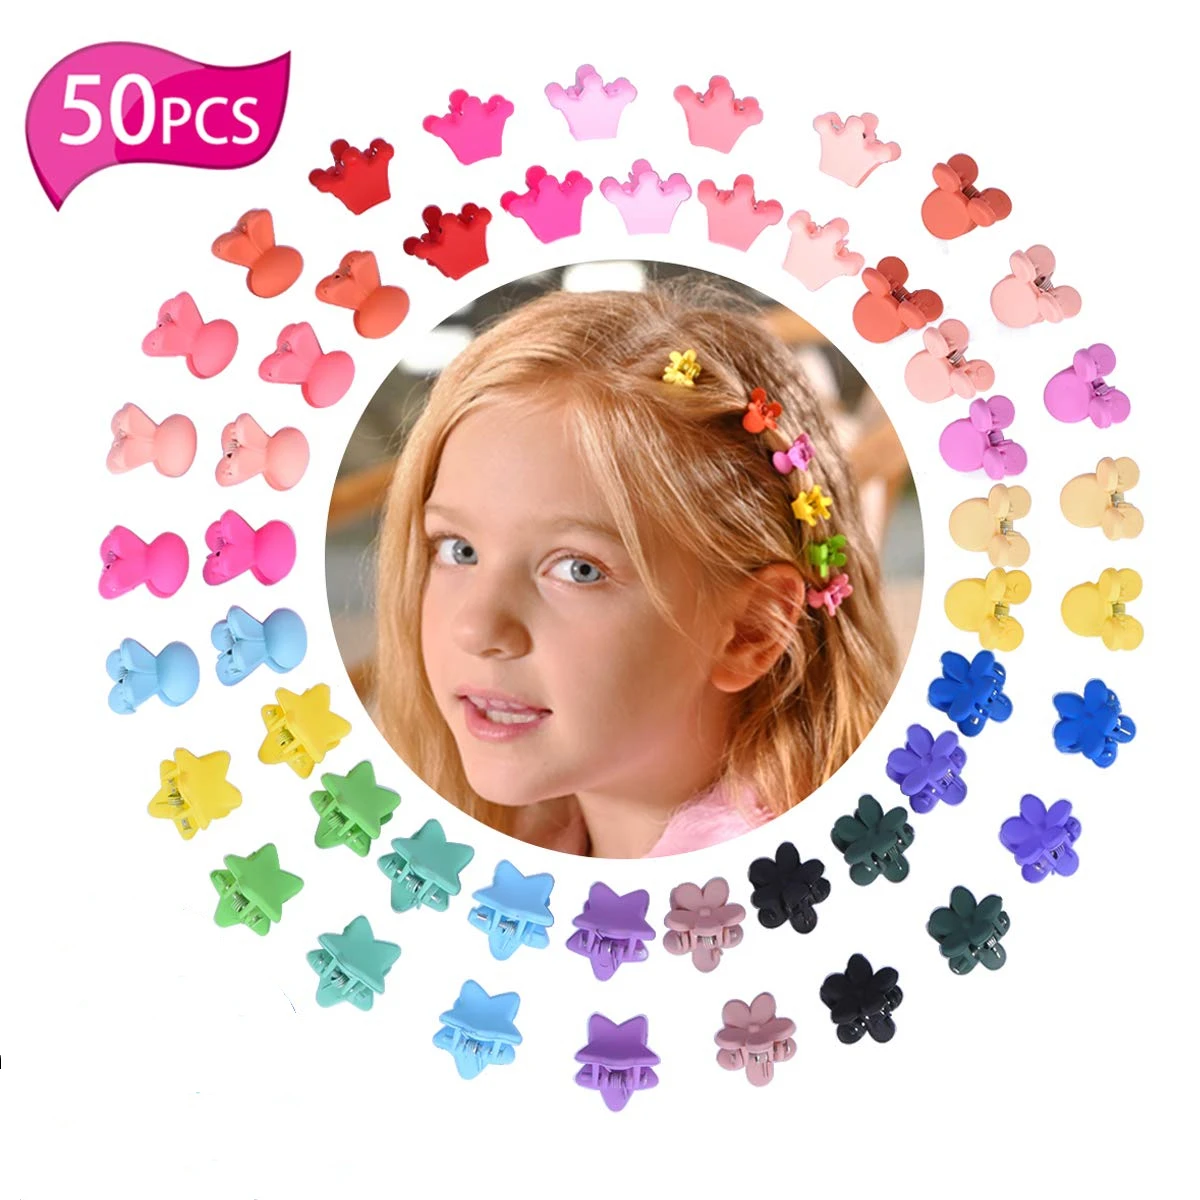 50 Pcs enfants Bébé en Plastique Filles Épingles à Cheveux Mini Pince Clips Cheveux Pince flowerfoaluk 